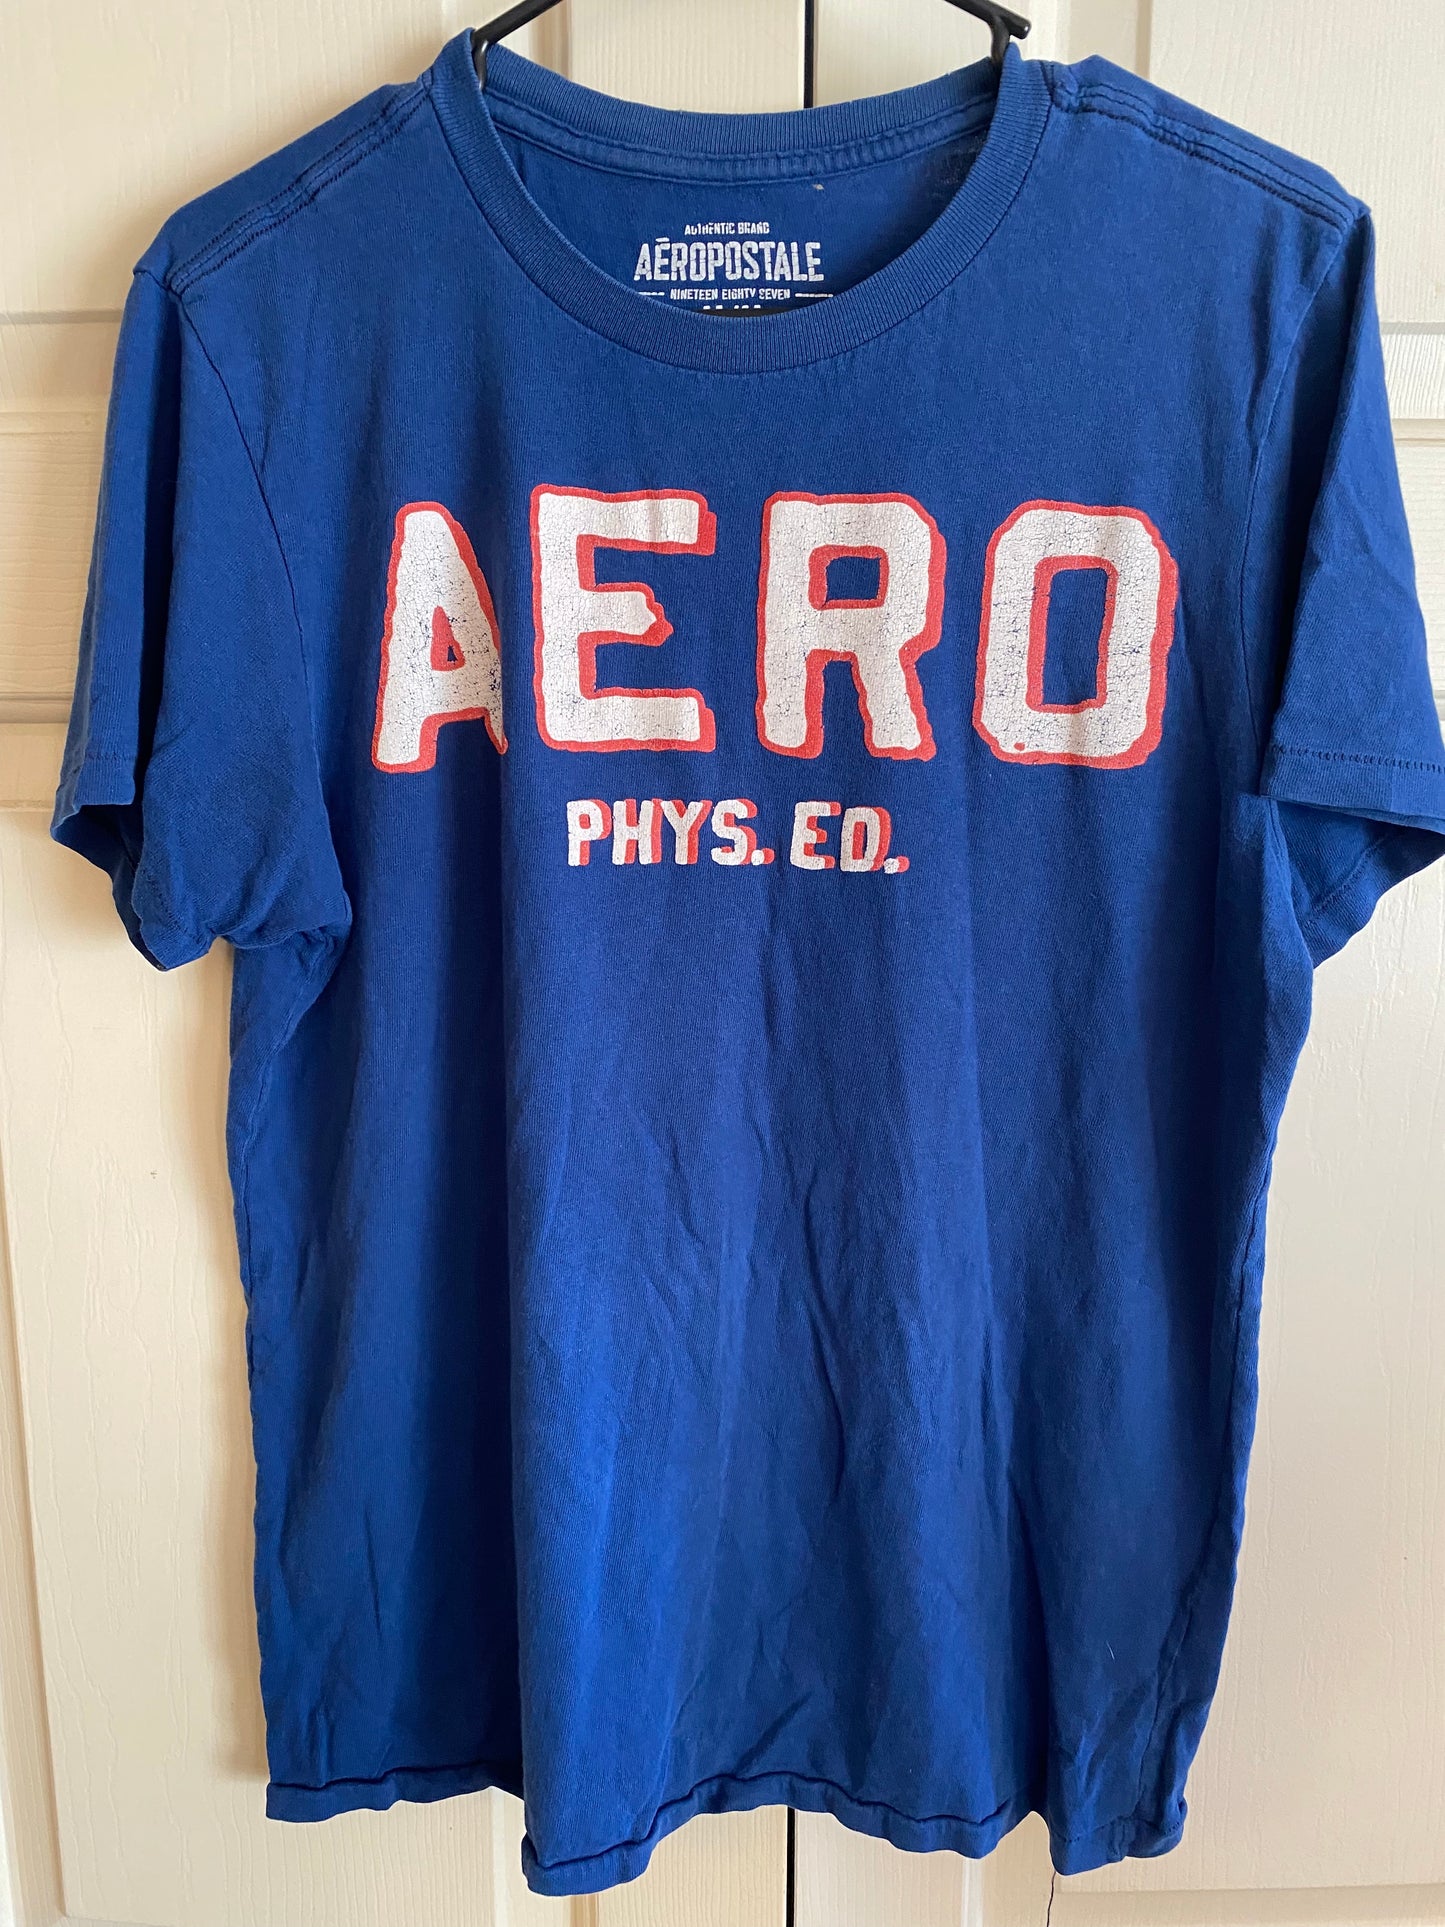 Aeropostale AERO "PHYS. ED. Blue short sleeve t-shirt Size M Medium